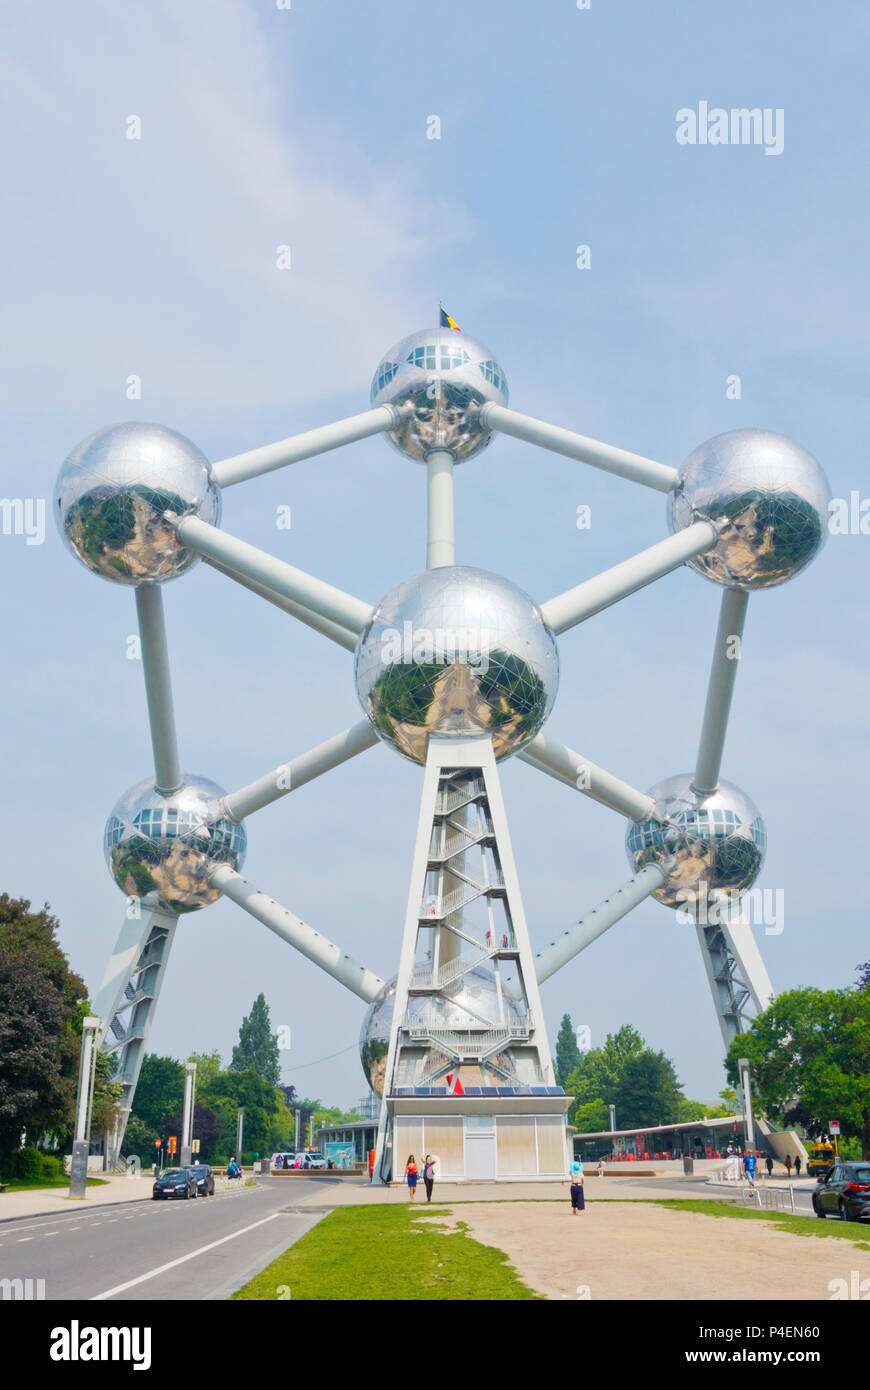 Atomium, Parc d'Osseghem, Laeken, Bruxelles, Belgio Foto Stock